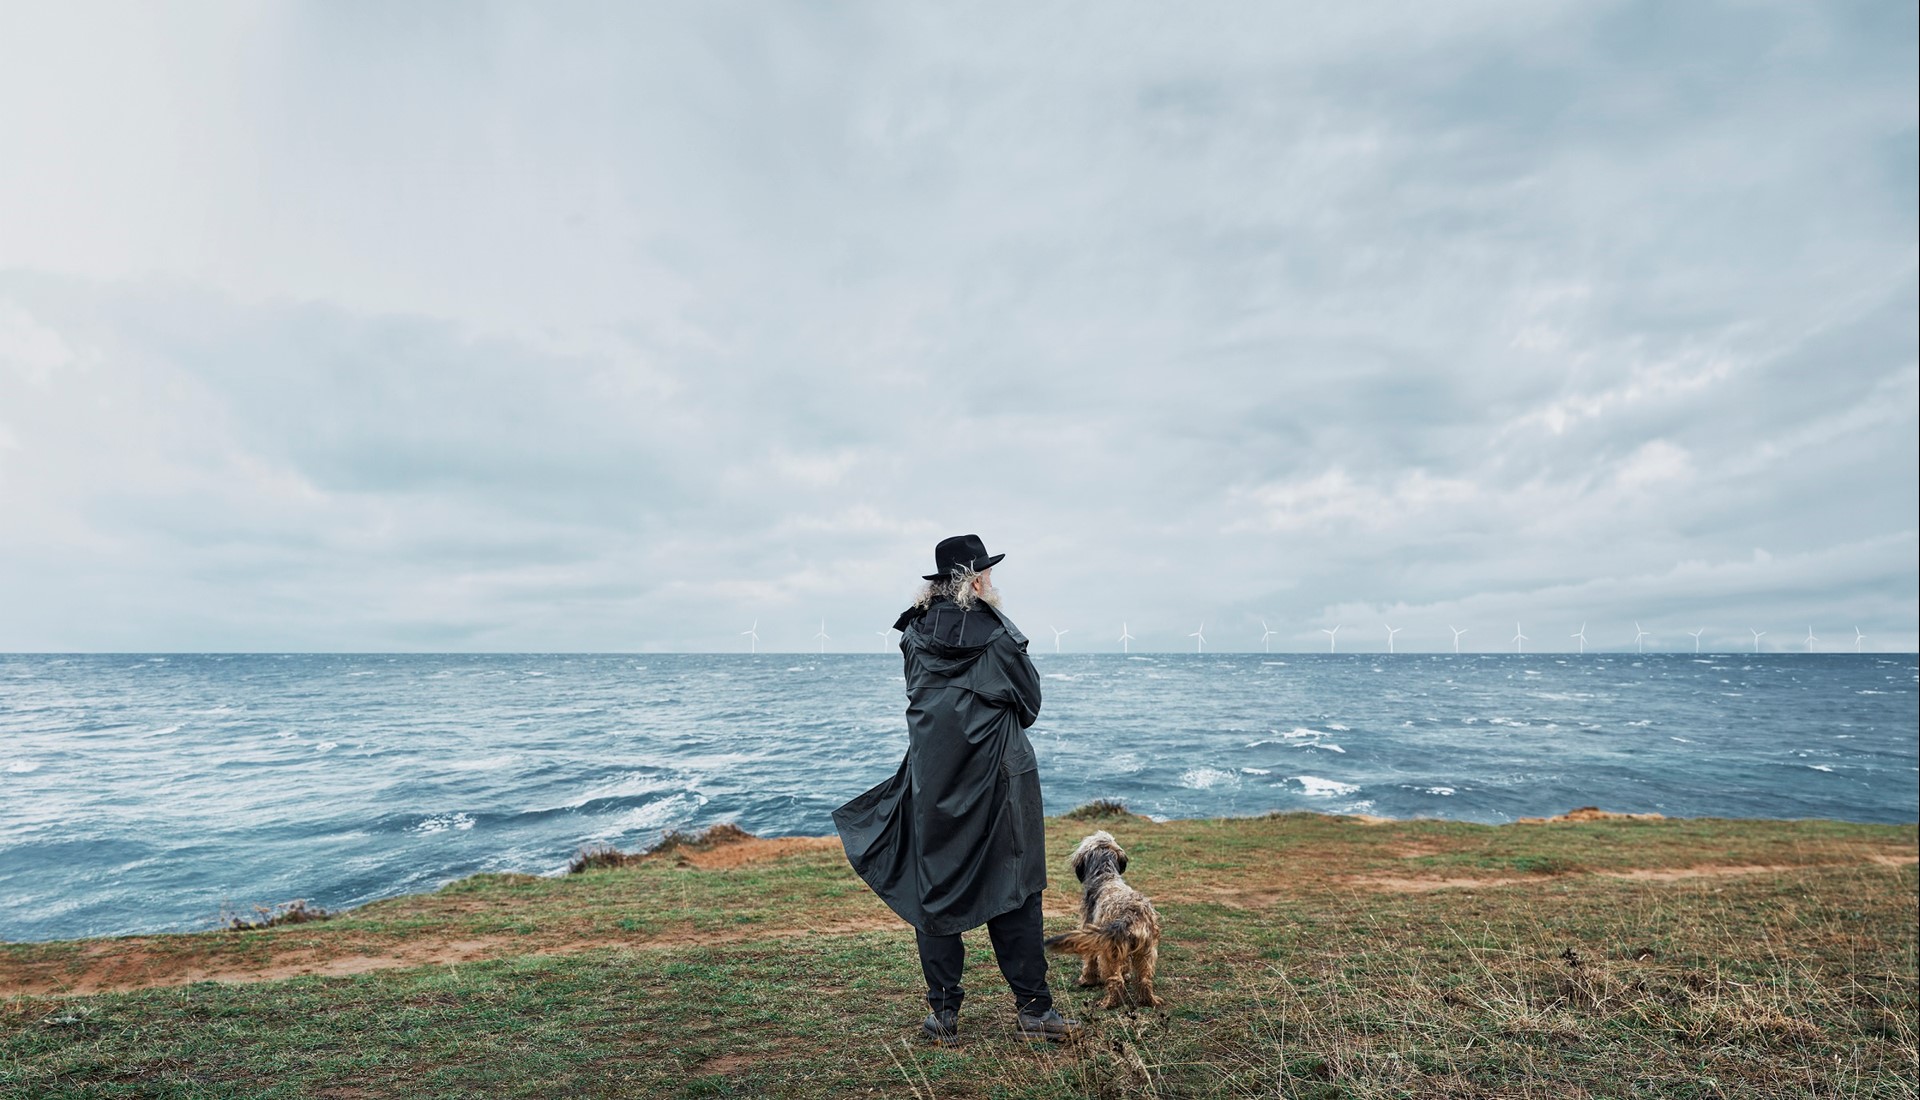 Oude man in zwarte jas met hond aan ruige kust - Jouw zaak. Jouw energie.